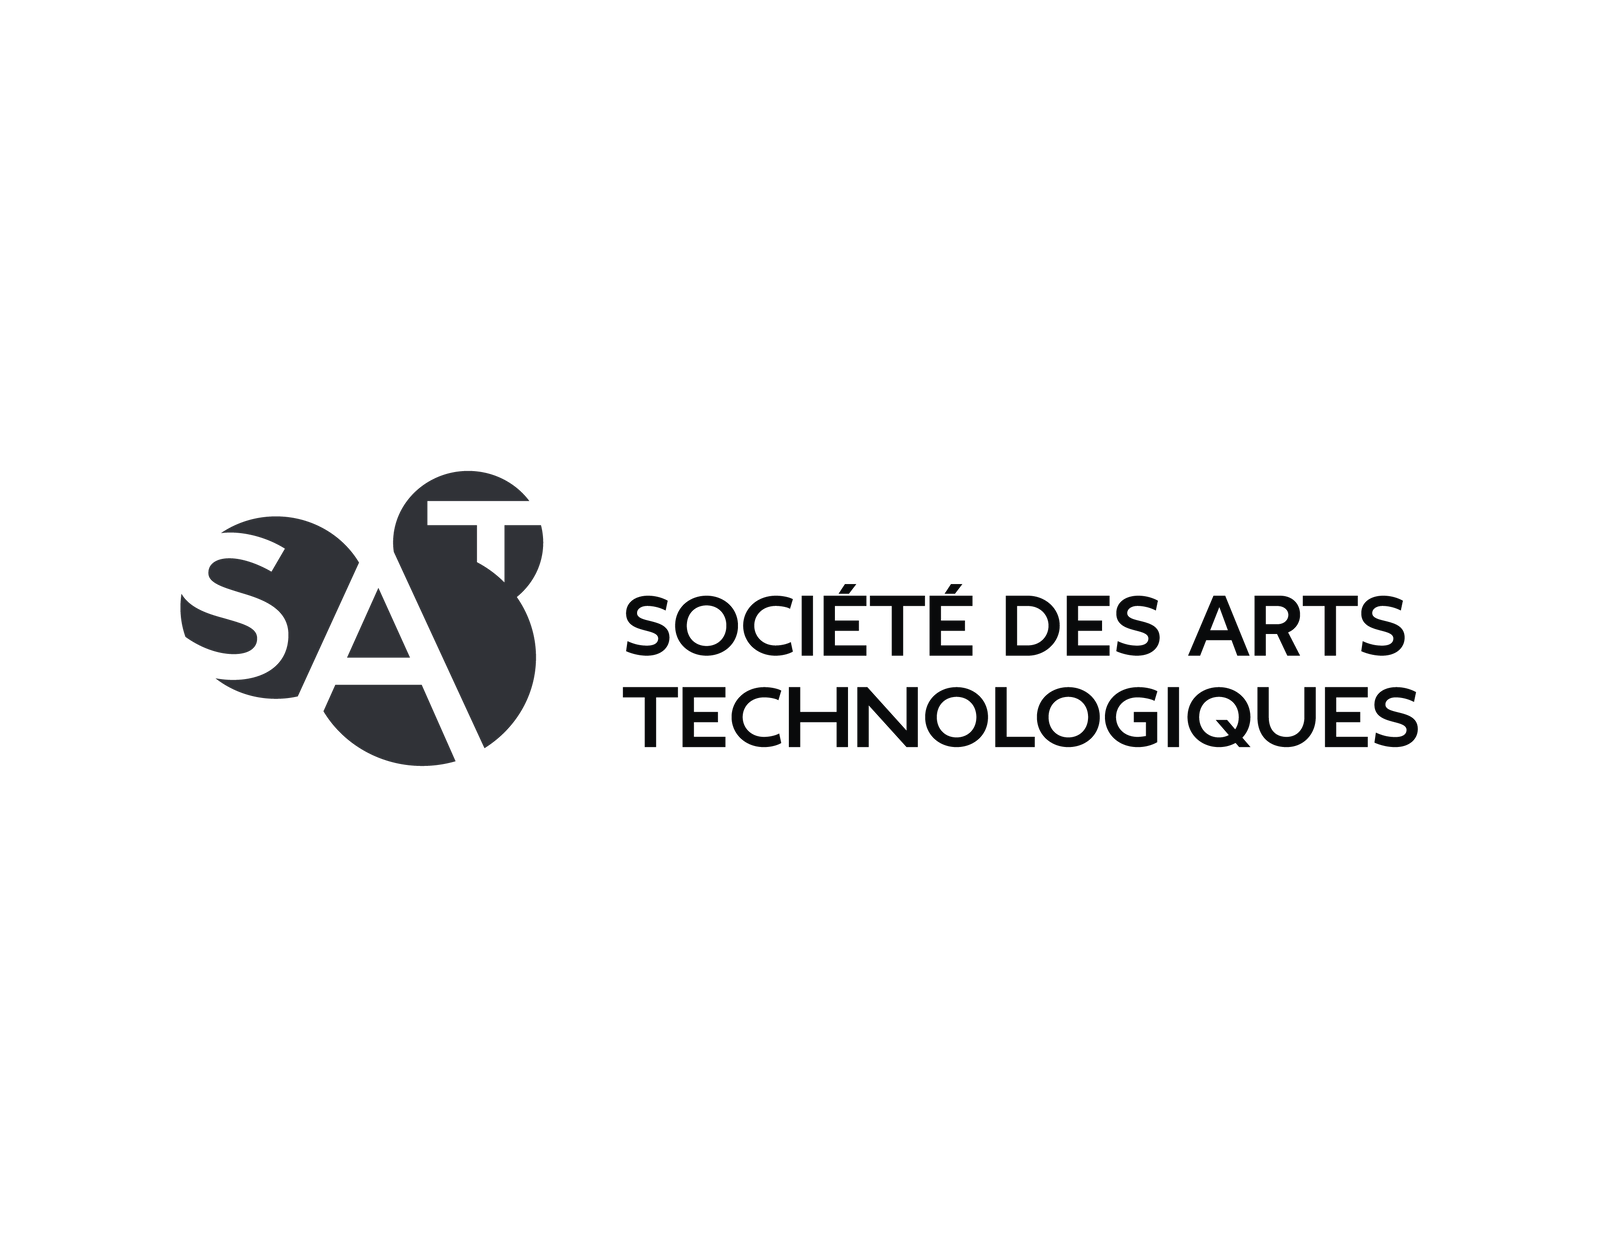 Logo Société des arts technologiques